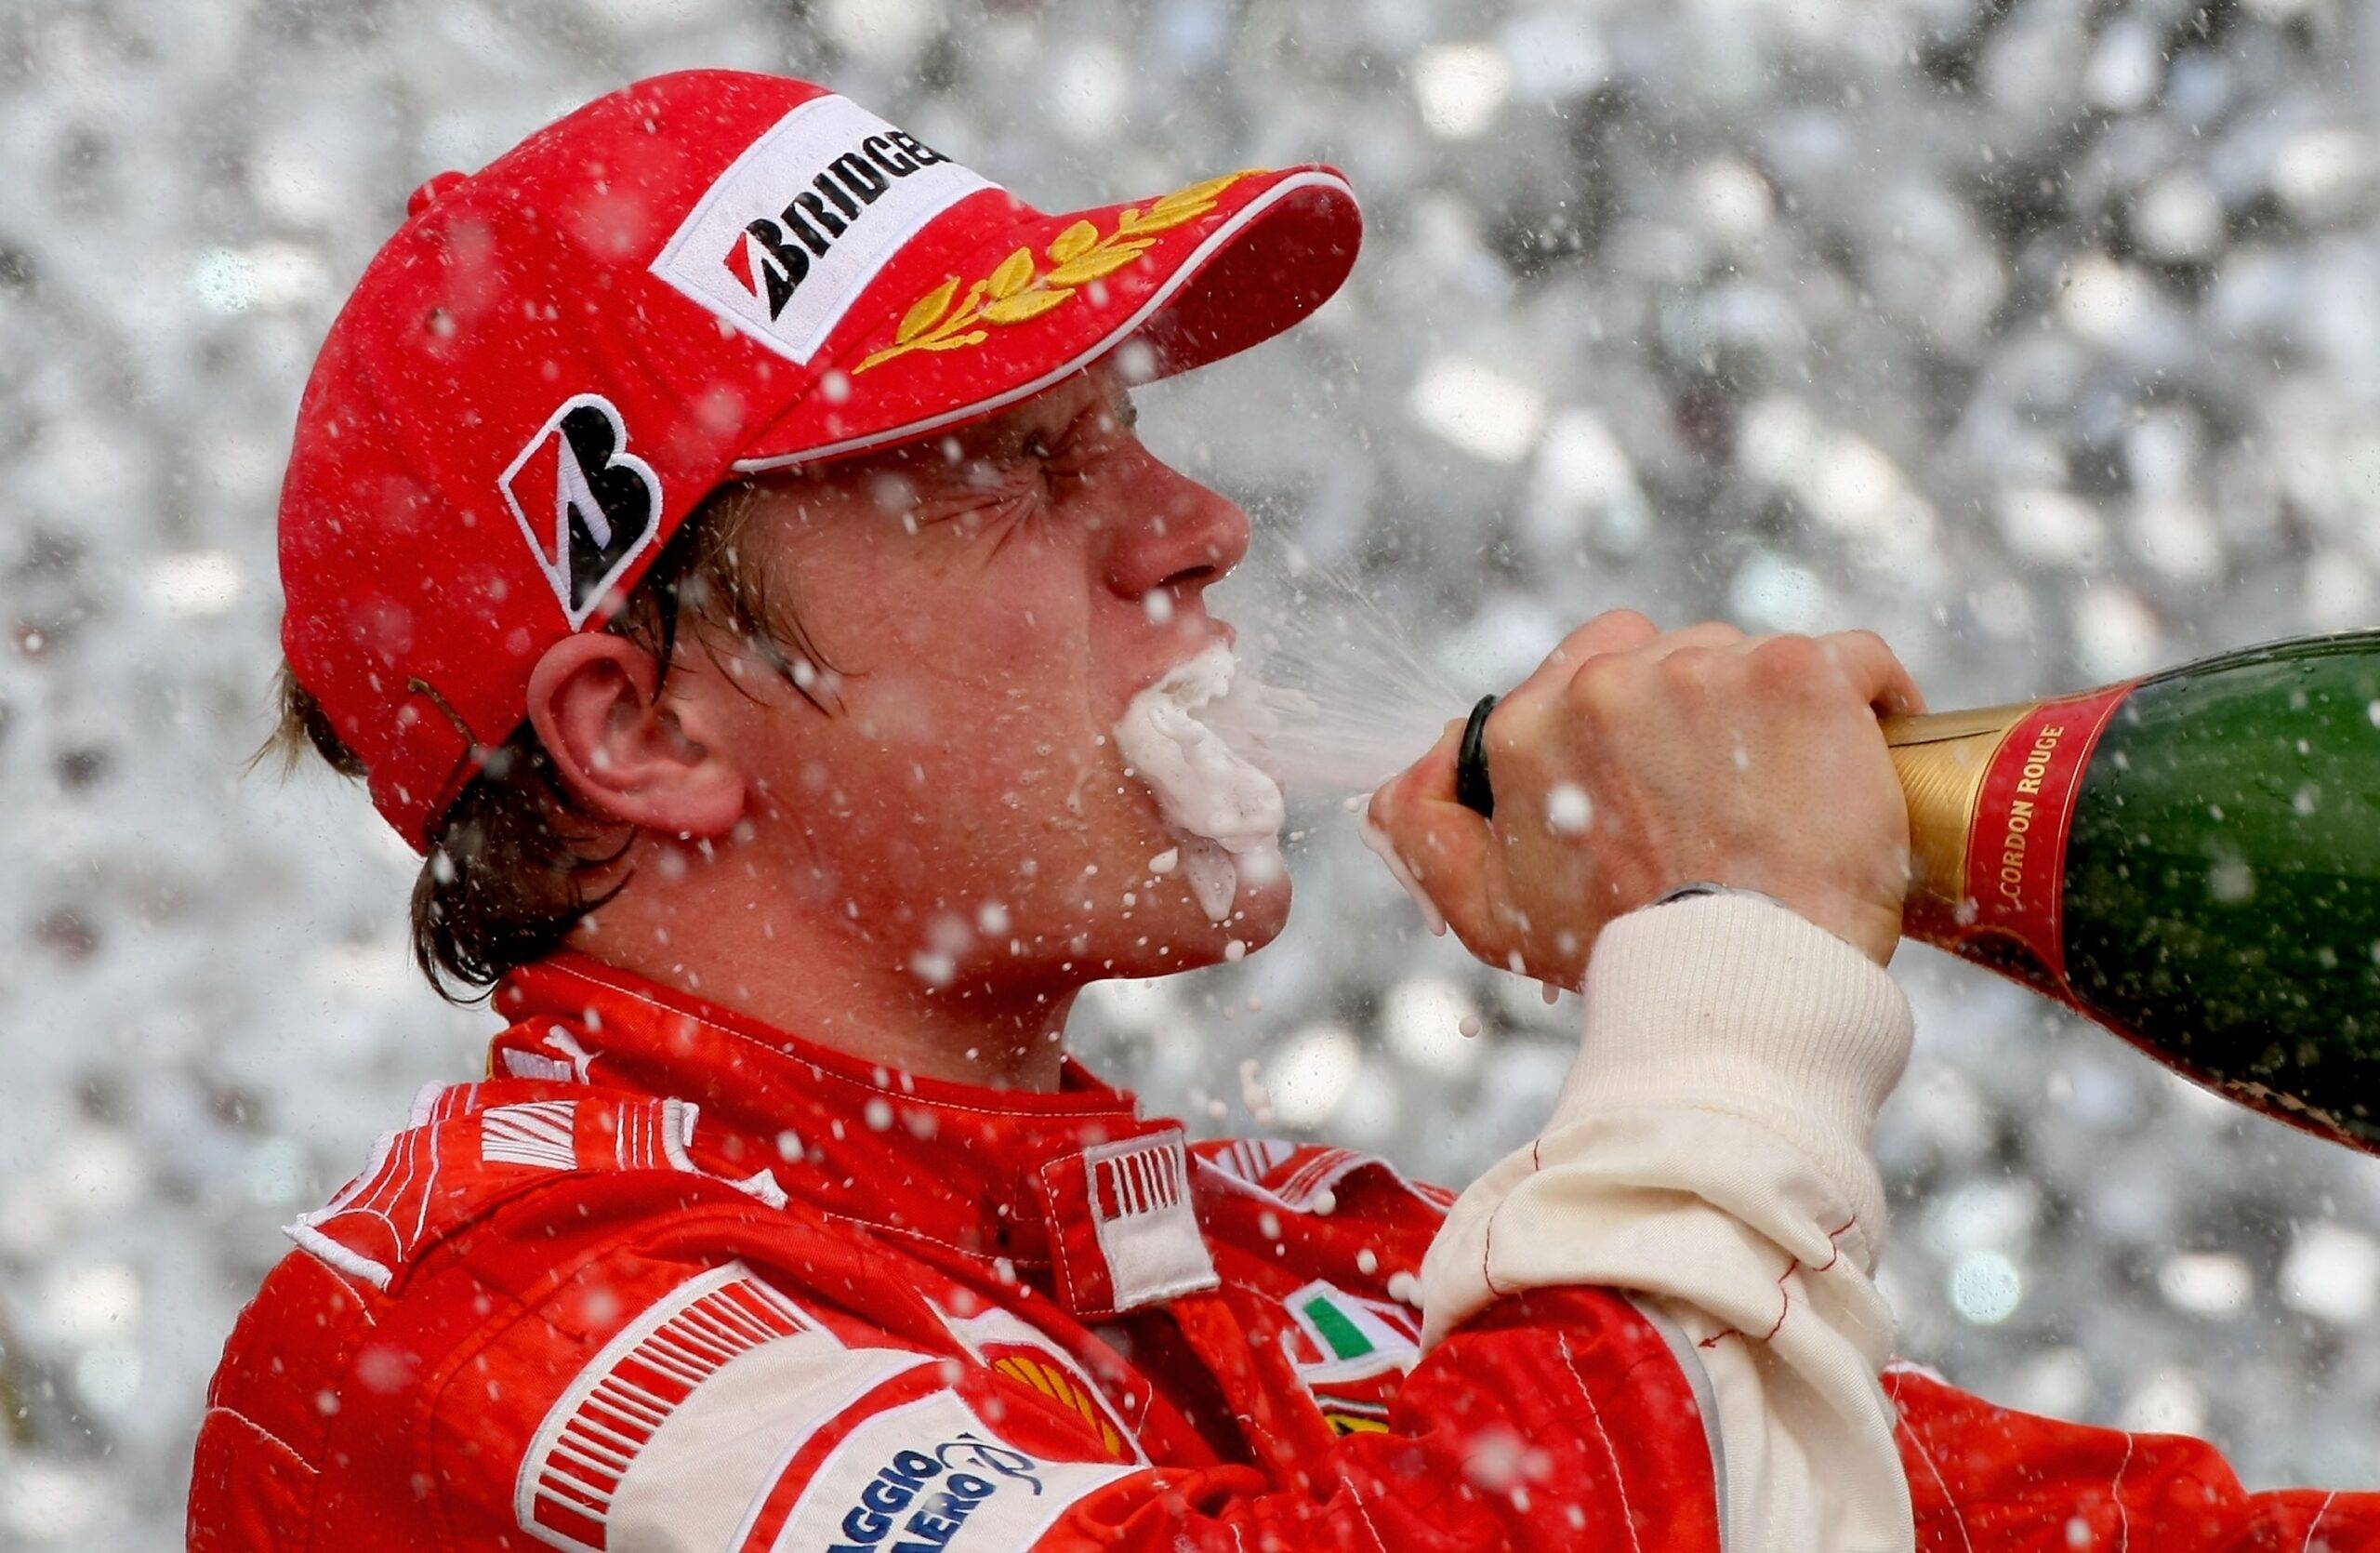 Kimi Raikkonen wins F1 2007 title